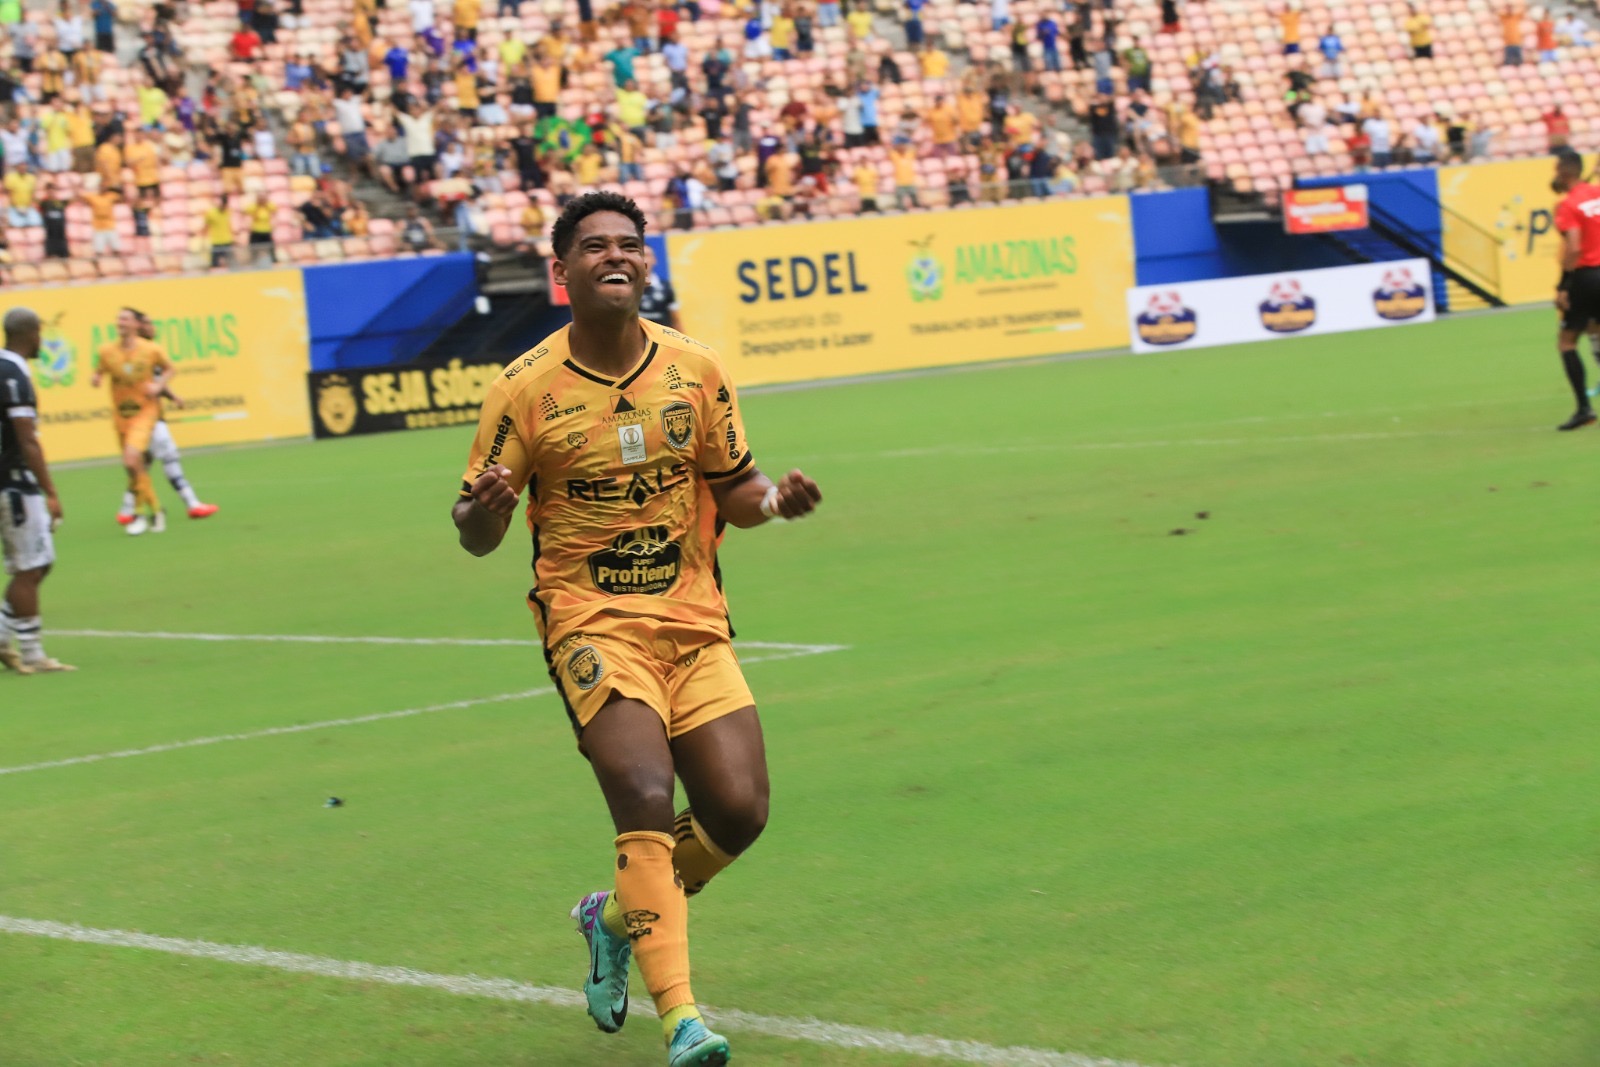 Amazonas FC será o sétimo clube do estado a disputar o Brasileirão Série B